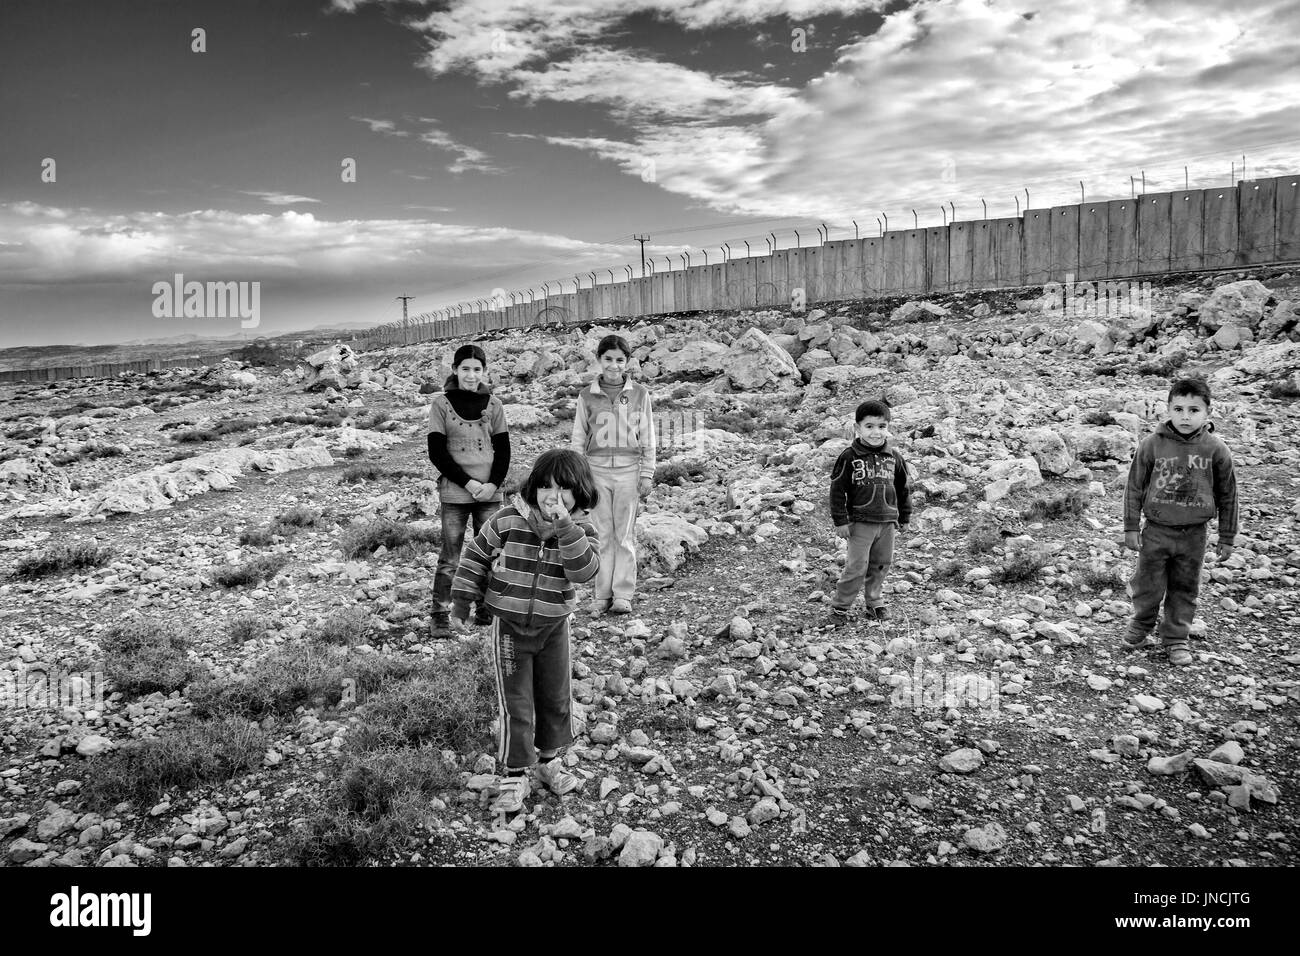 Tribu de Bédouins palestiniens à l'Est de Jérusalem, vers décembre 2013. Ils soutiennent des mode de vie nomade. L'élevage caprin est la principale source de revenus pour la c Banque D'Images